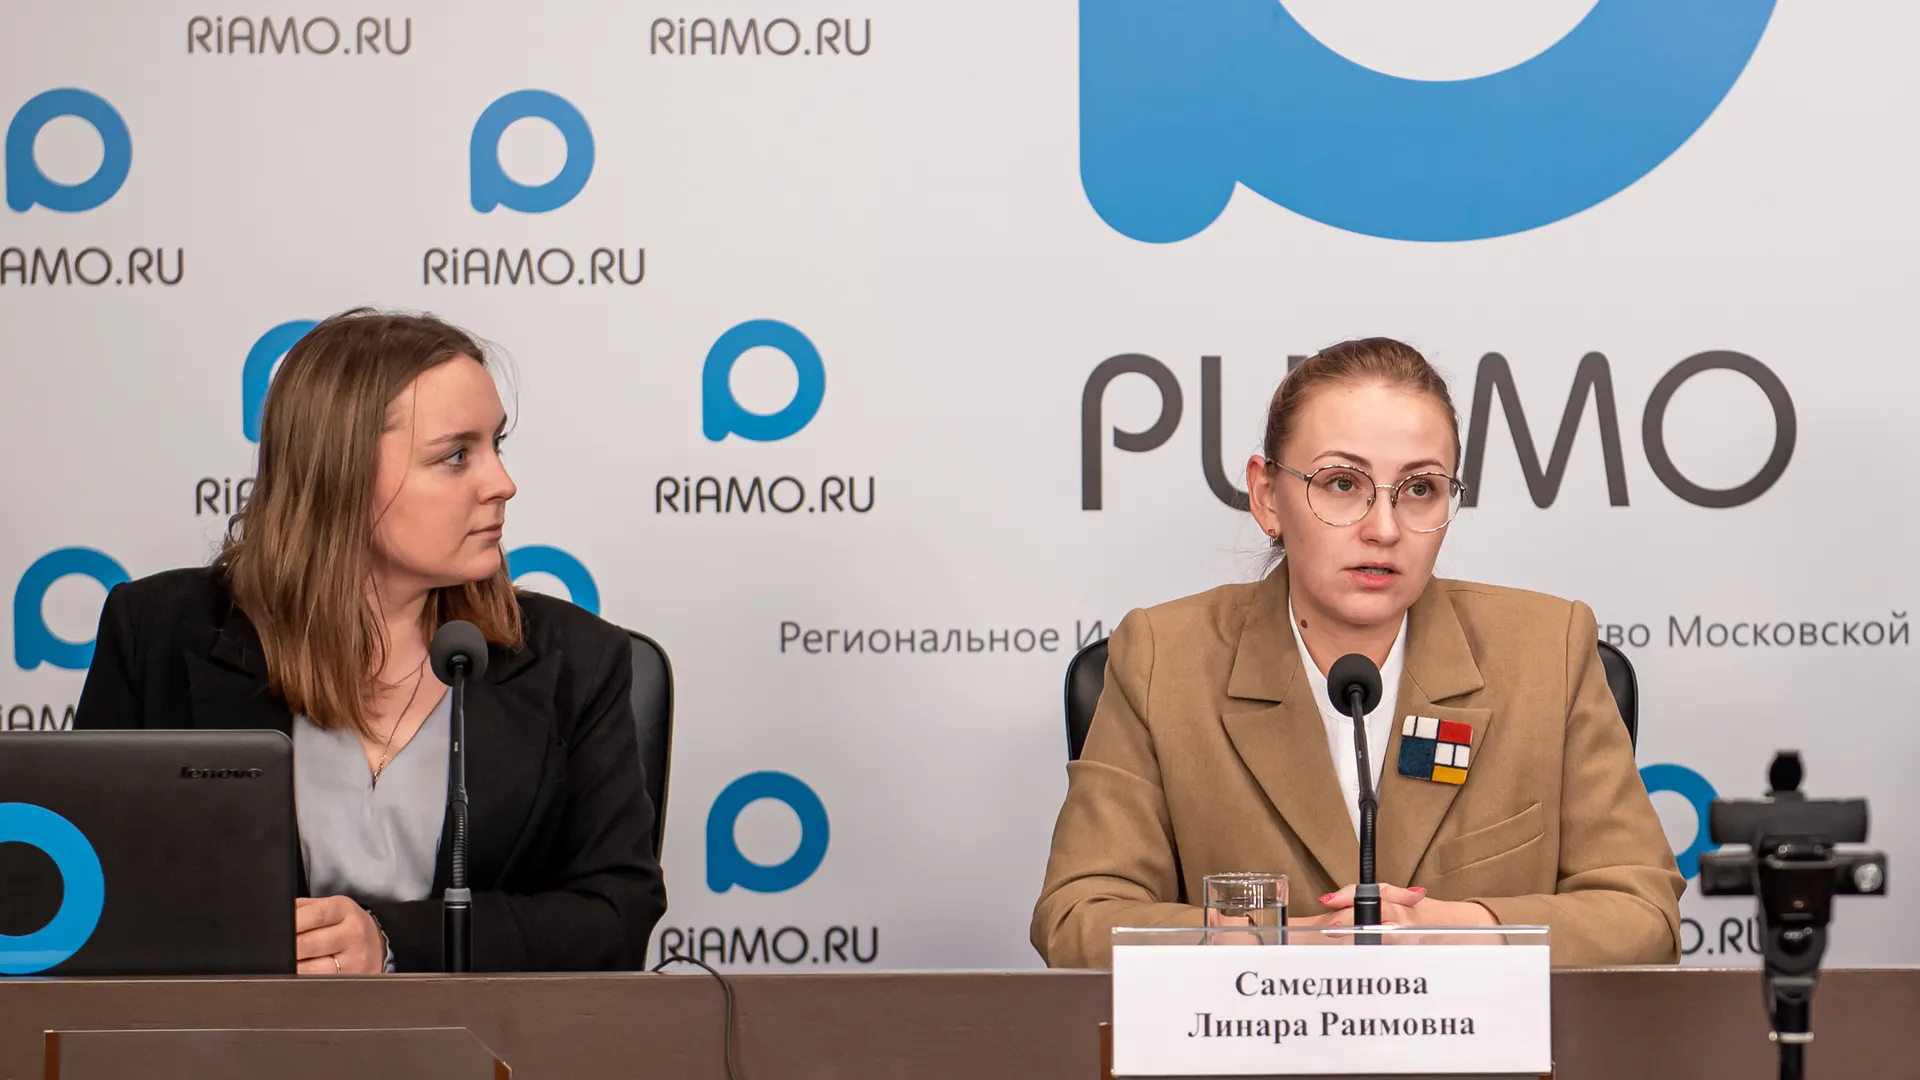 Линара Самединова: Молодежь активно участвует в качестве наблюдателей в избирательном процессе